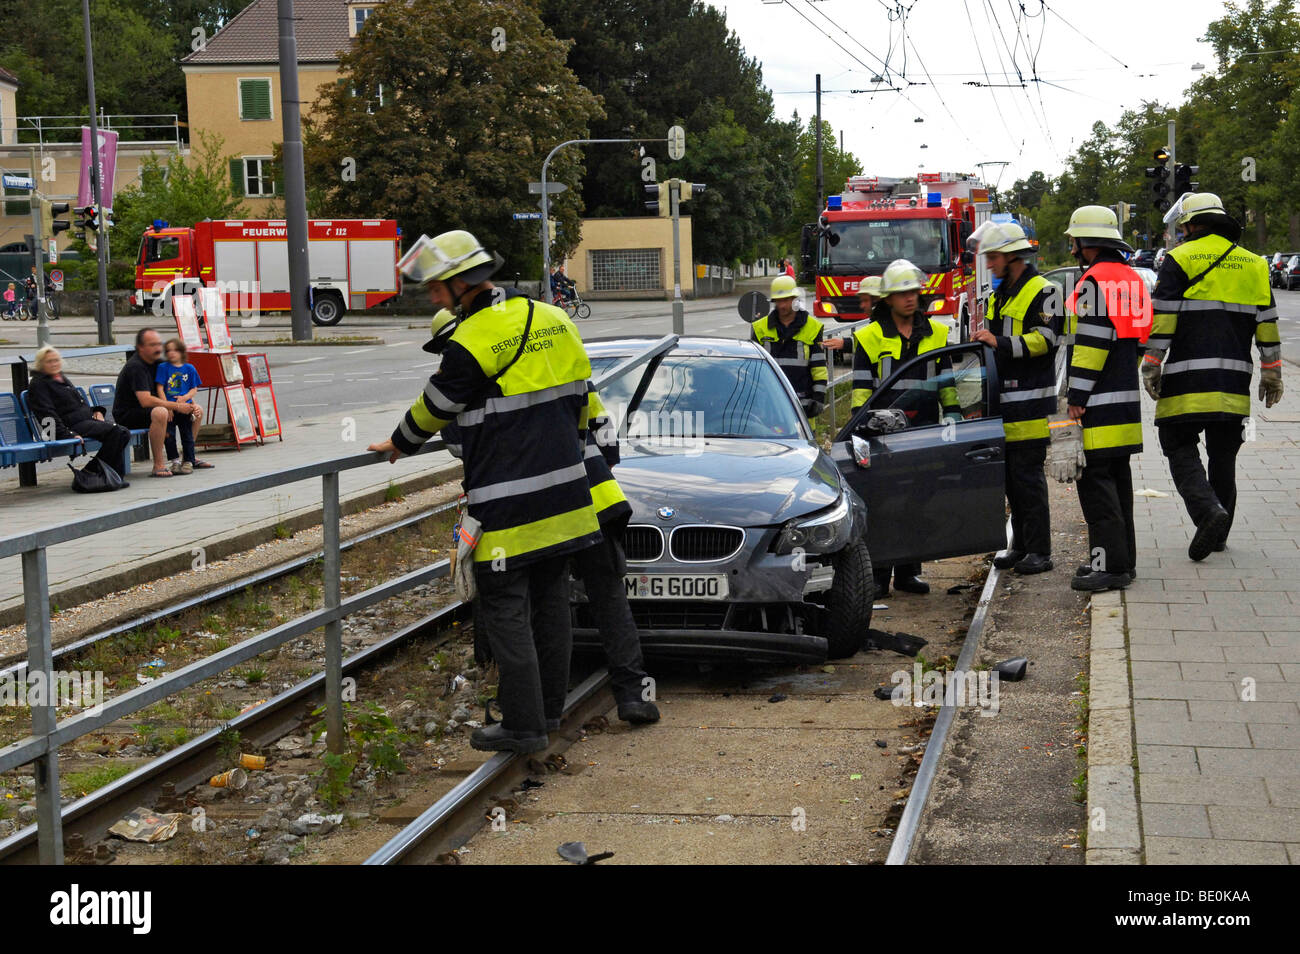 Unfall Auto auf Straßenbahn verfolgt, Kfz-Kennzeichen geändert, München, Bayern, Deutschland, Europa Stockfoto